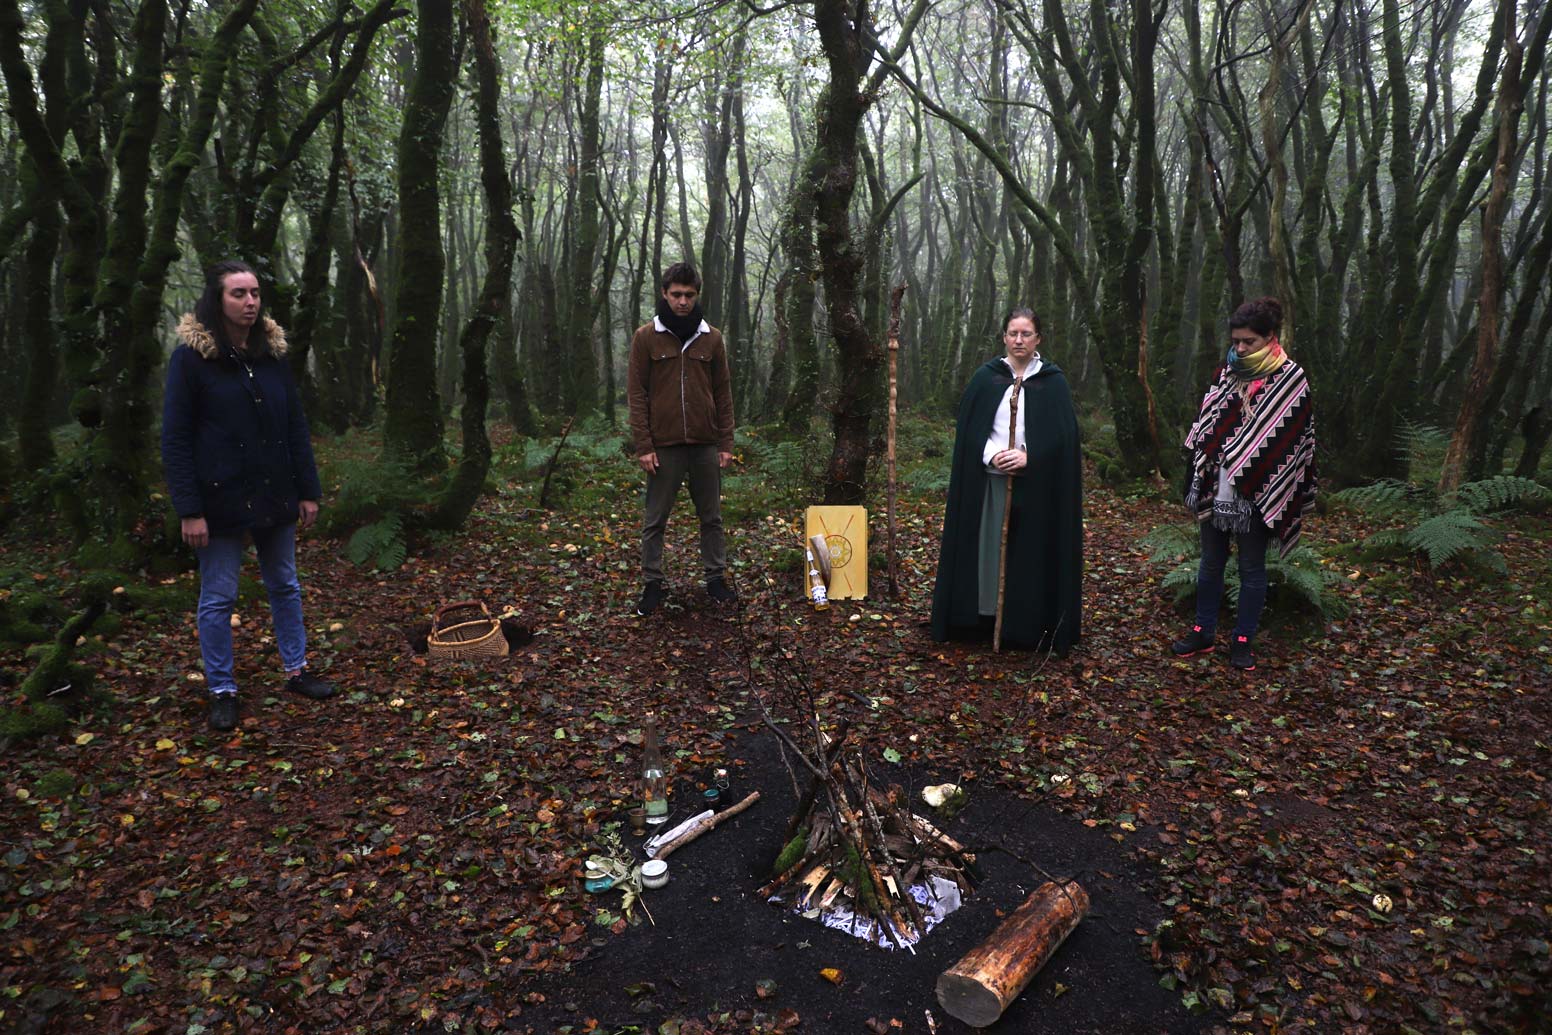 Saison sombre : nous voyons 4 personnes dont un sacerdote dans les bois en cercle autour d’un foyer dont le feu n’est pas encore allumé.